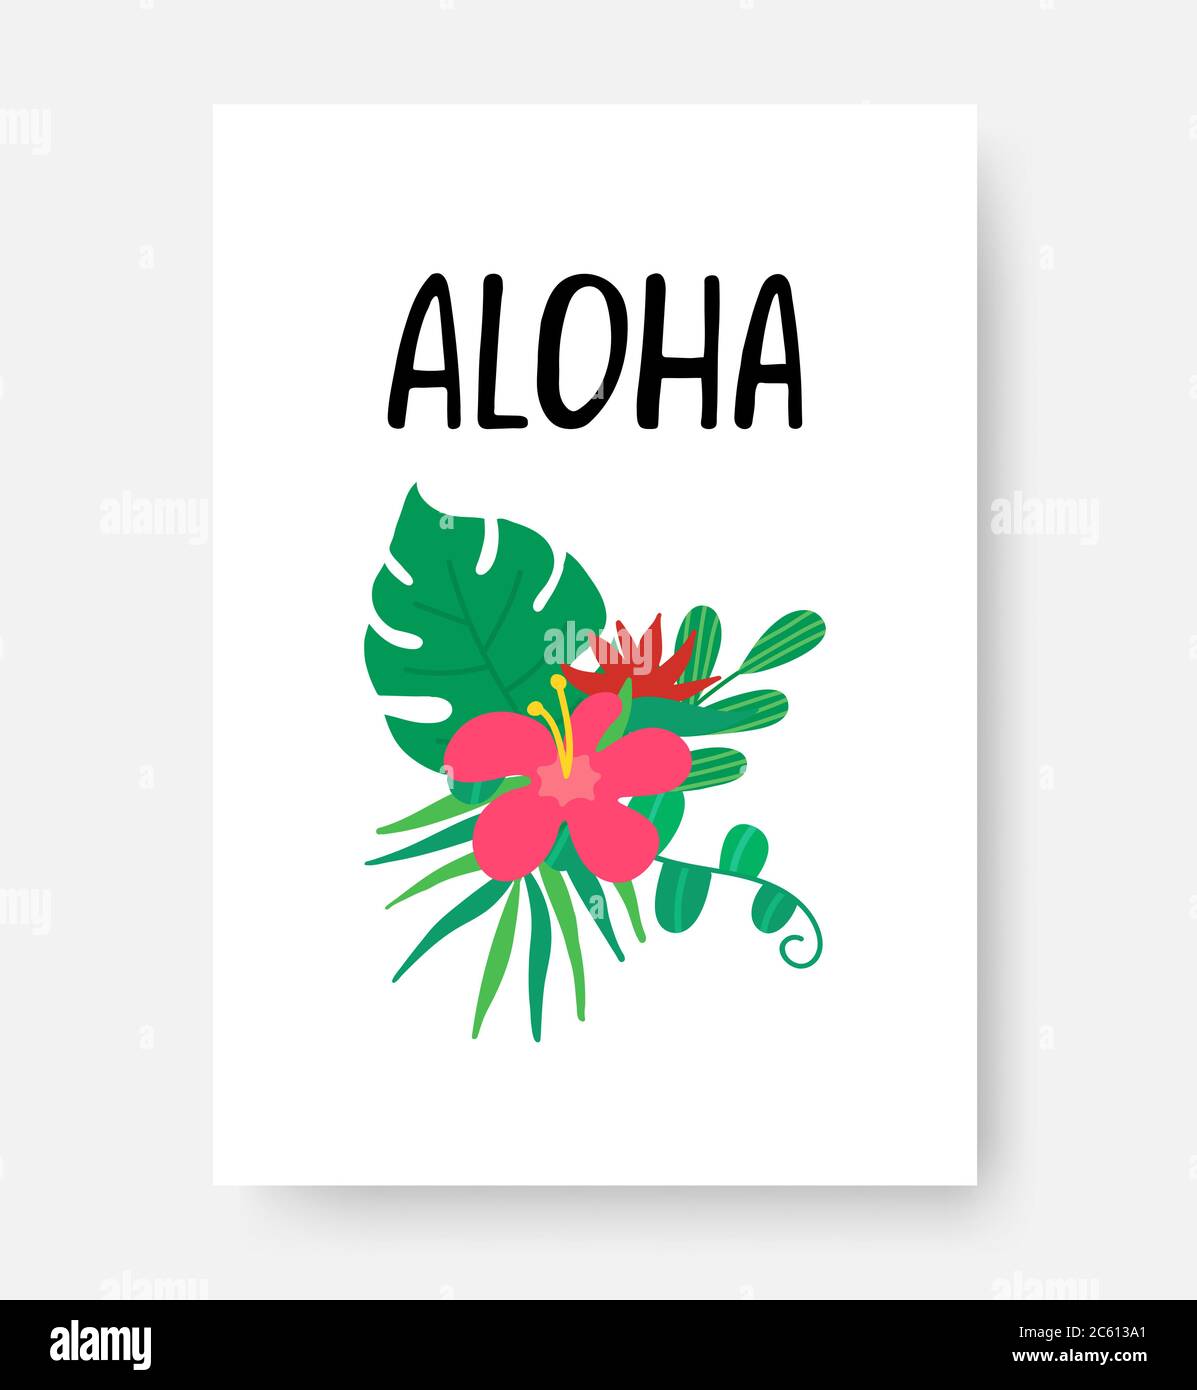 Affiche tropicale. Phrase de lettrage à la main Aloha sur fond blanc. Feuilles tropicales, fleurs pour bannière, prospectus, carte. Composition estivale. Vecteur Illustration de Vecteur